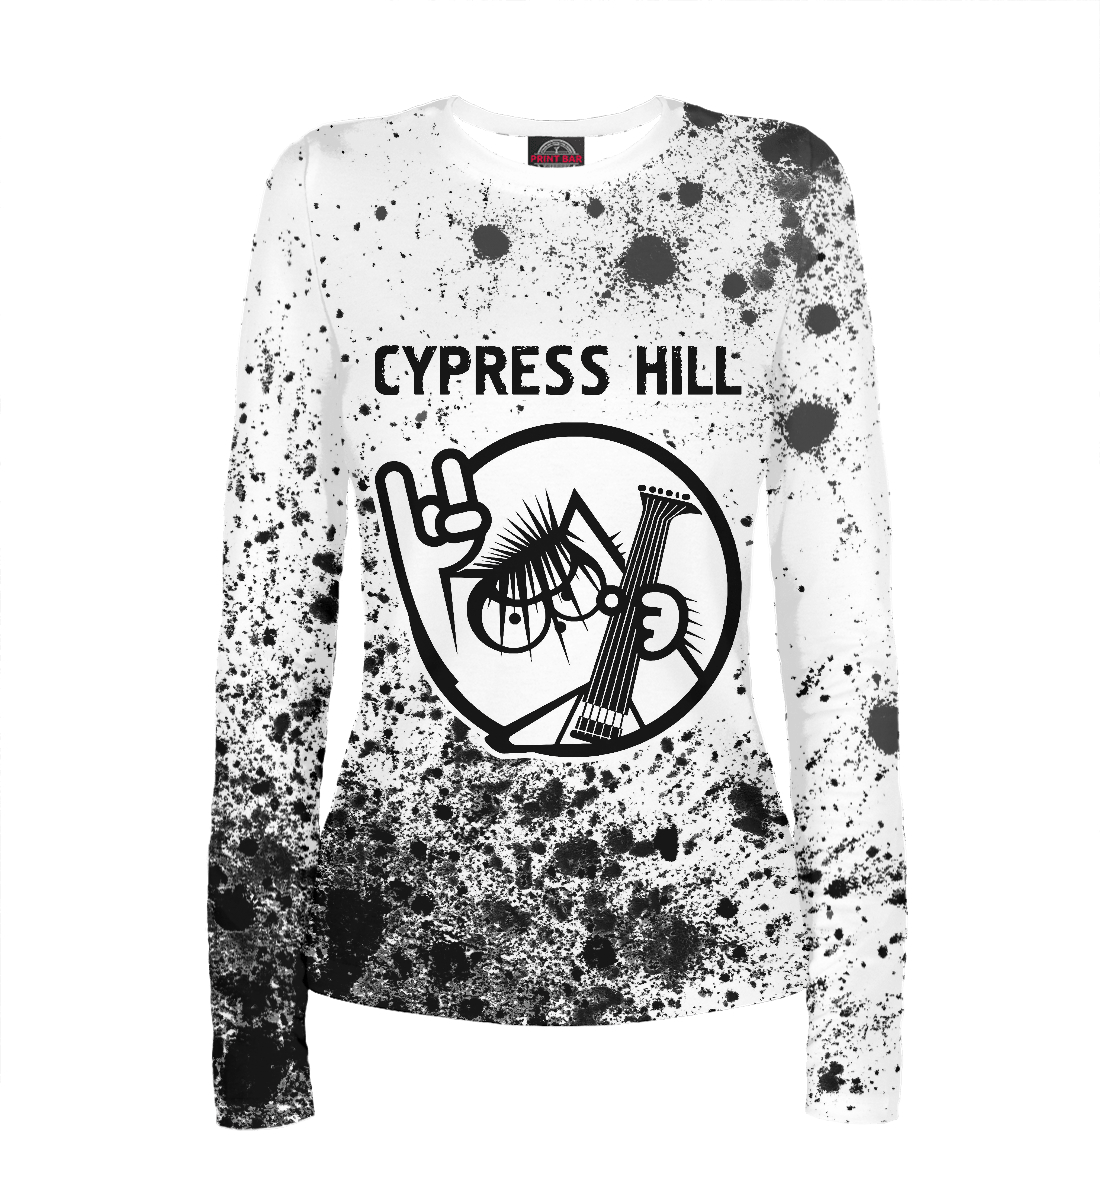 

Cypress Hill + Кот